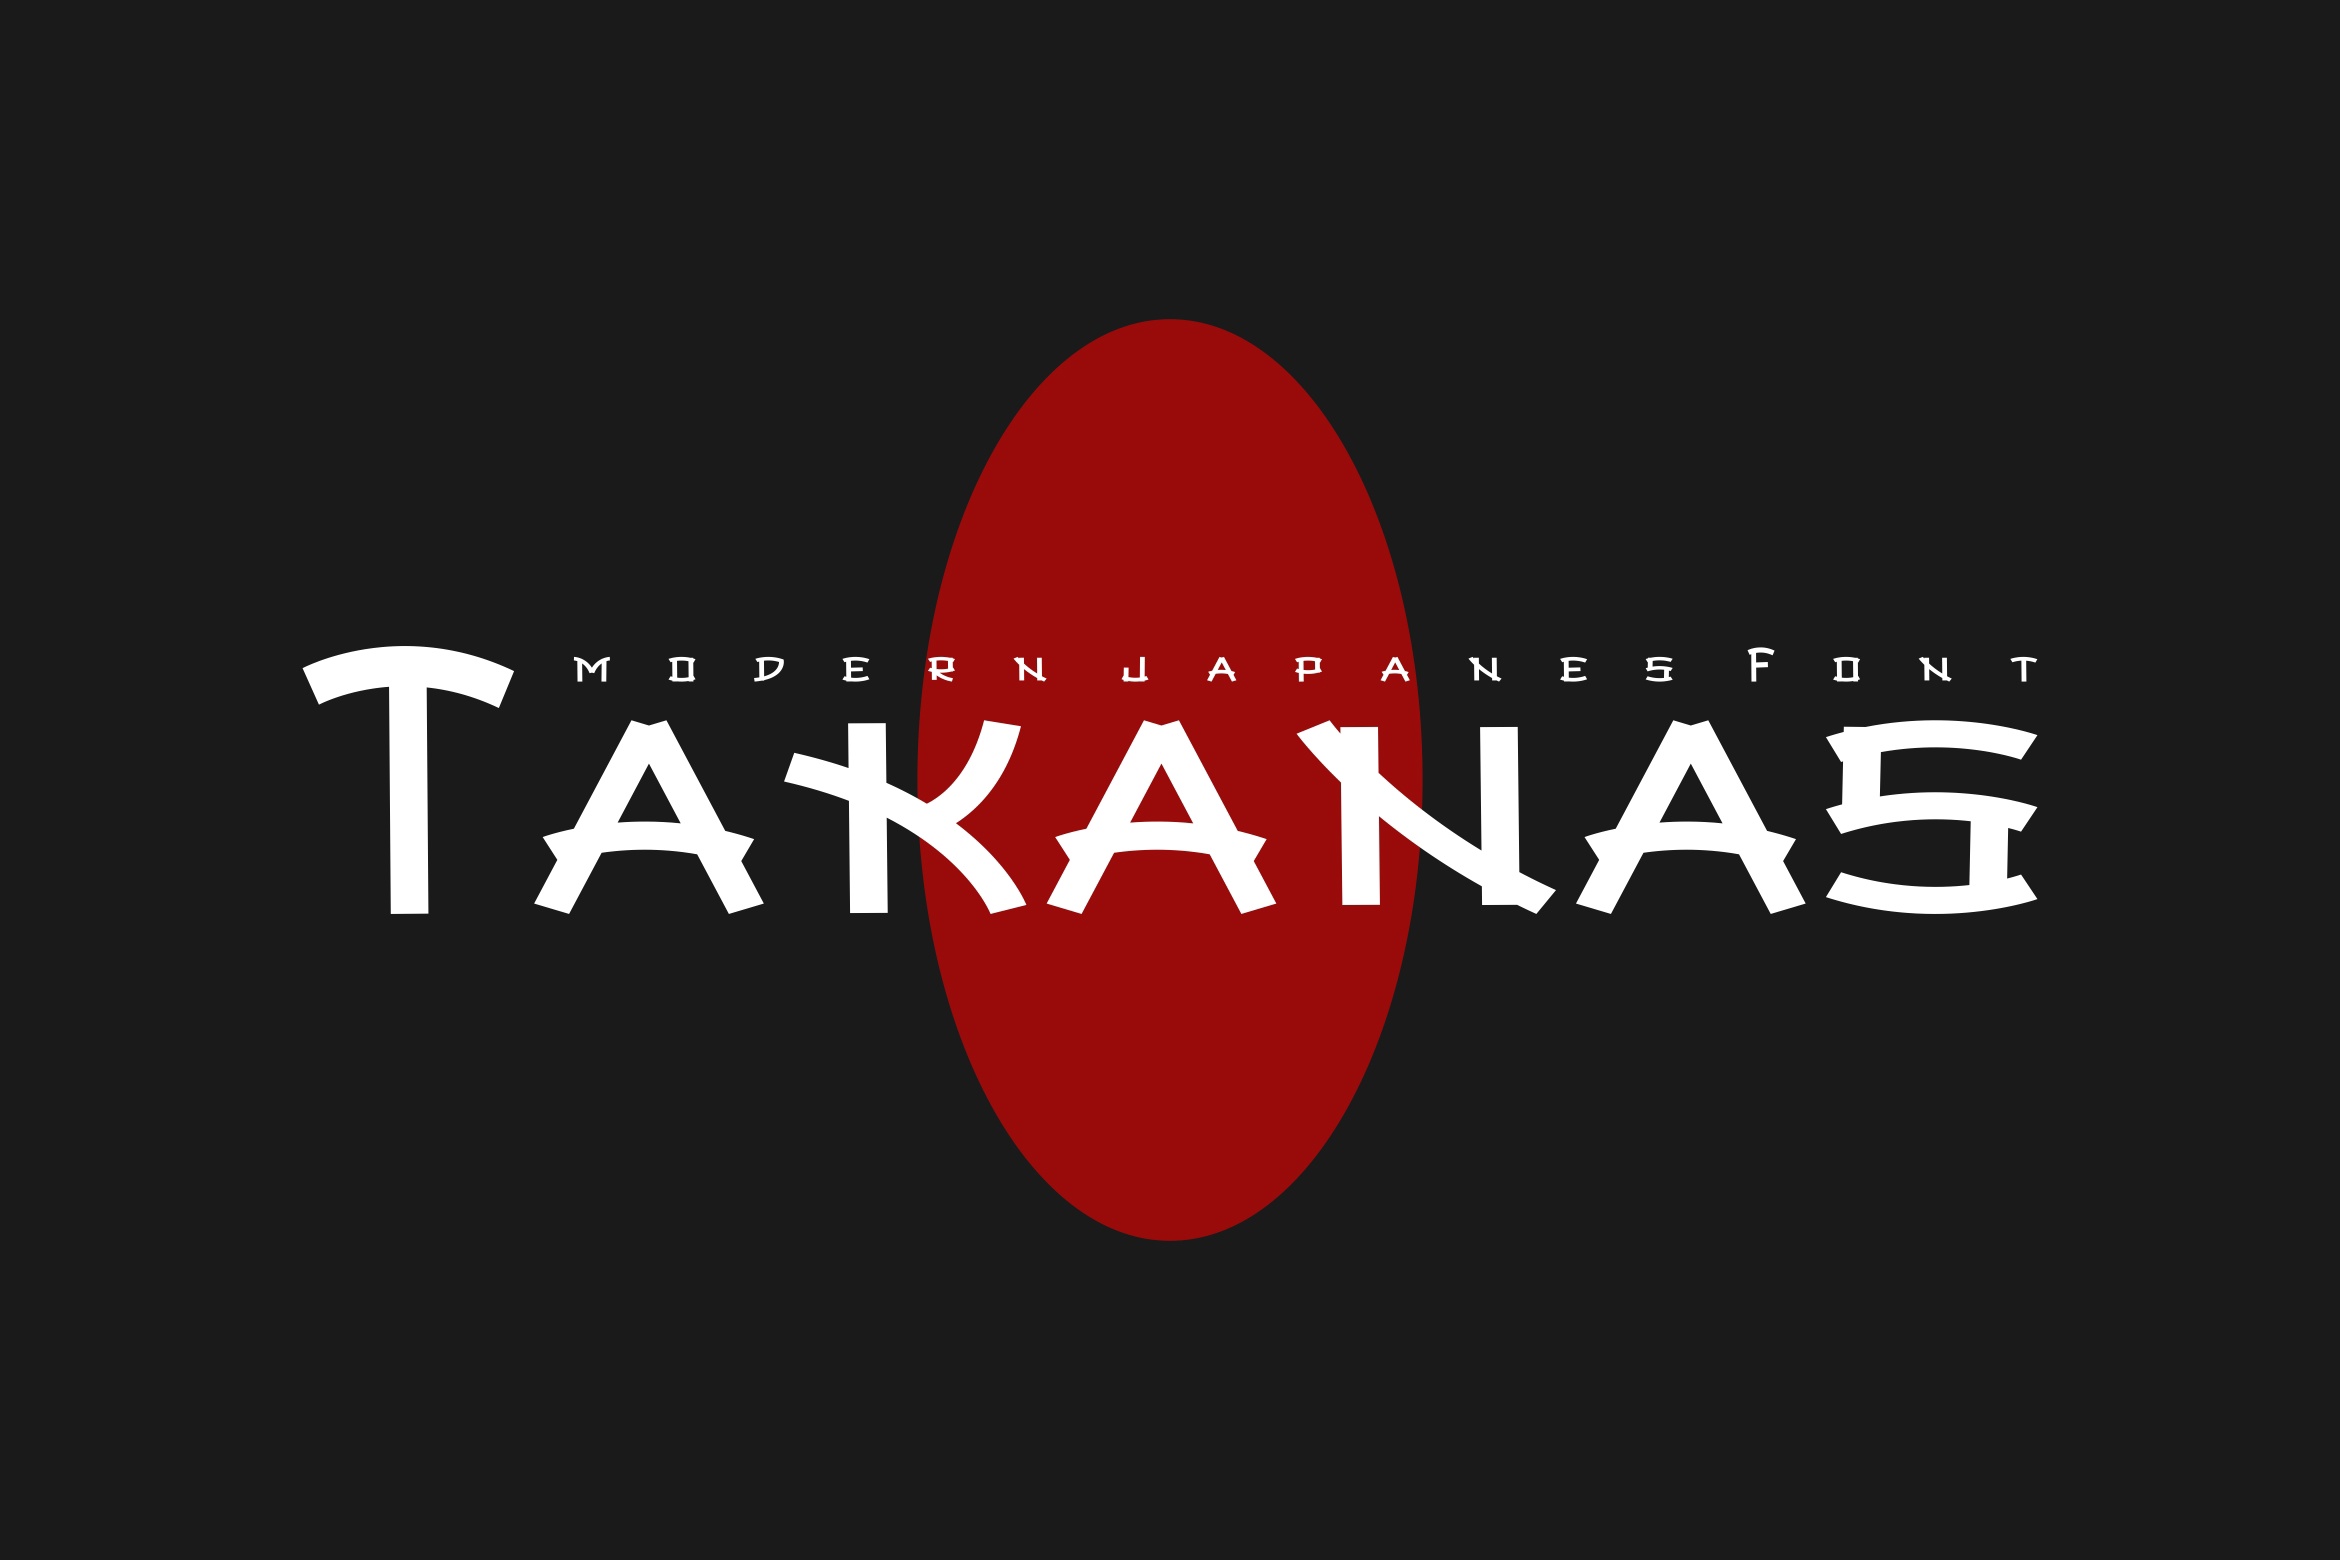 Ejemplo de fuente Takanas